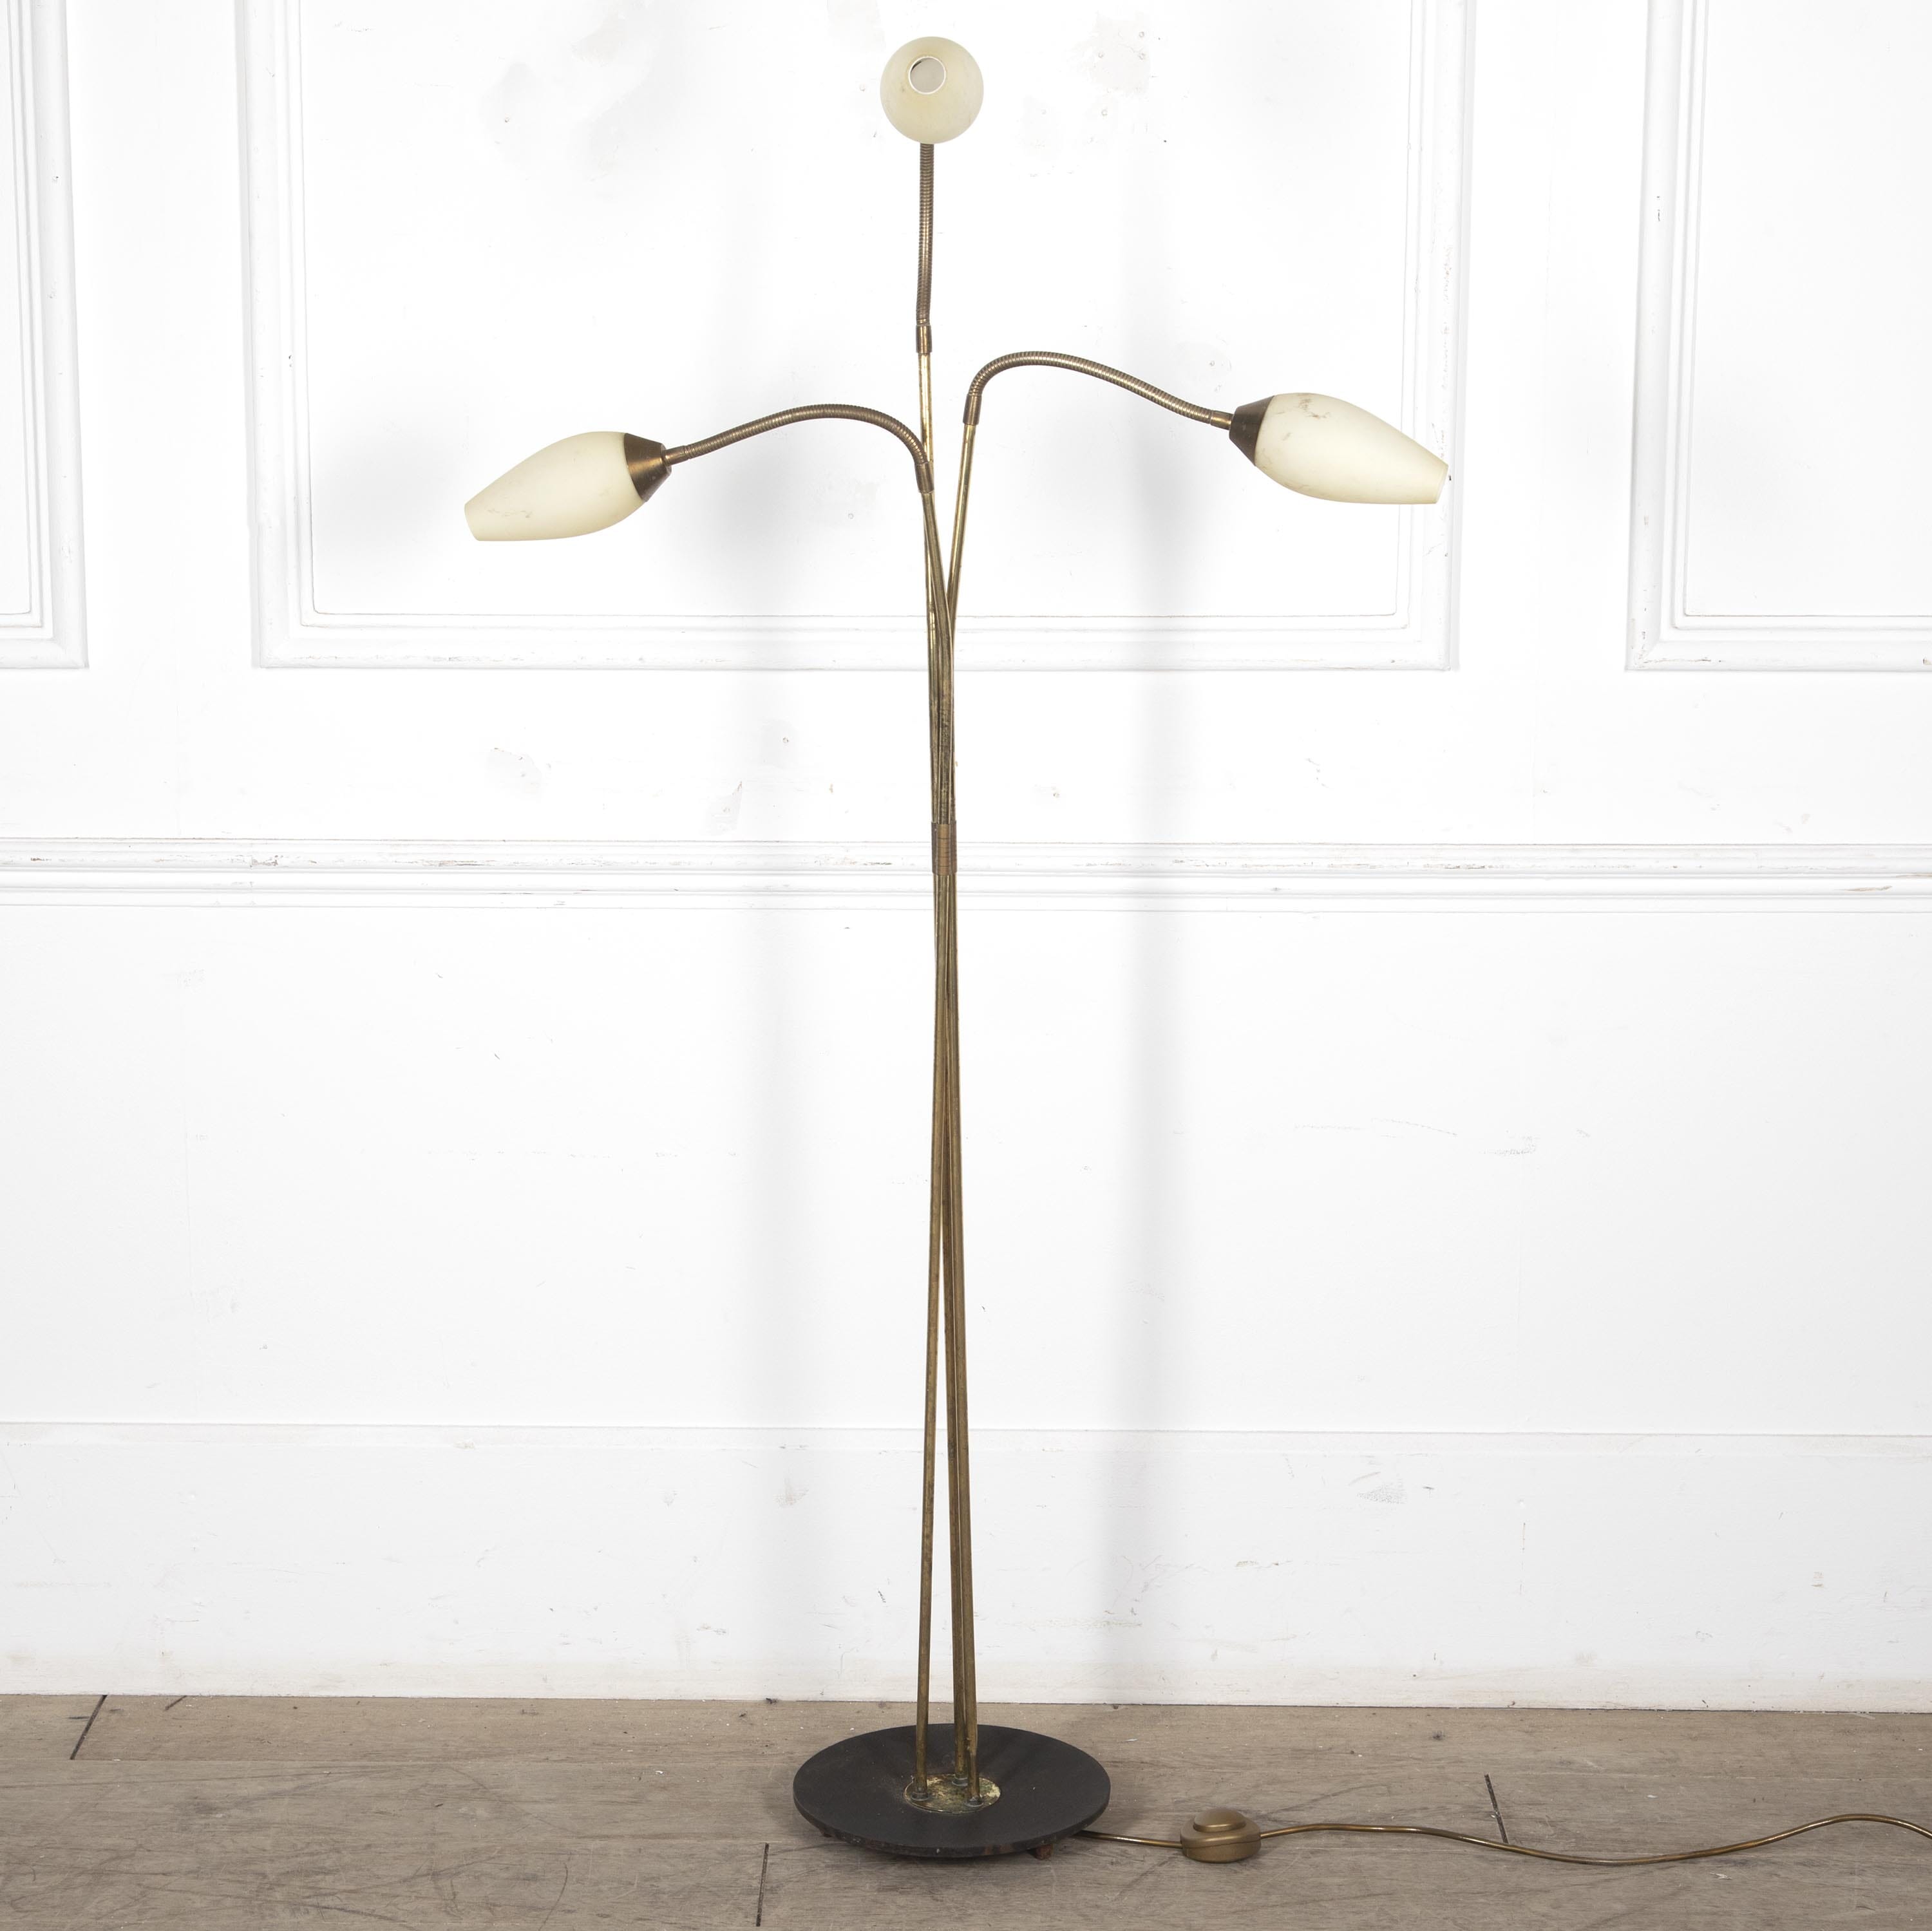 Antique Floor Lamps For Sale | Lorfords Antiques